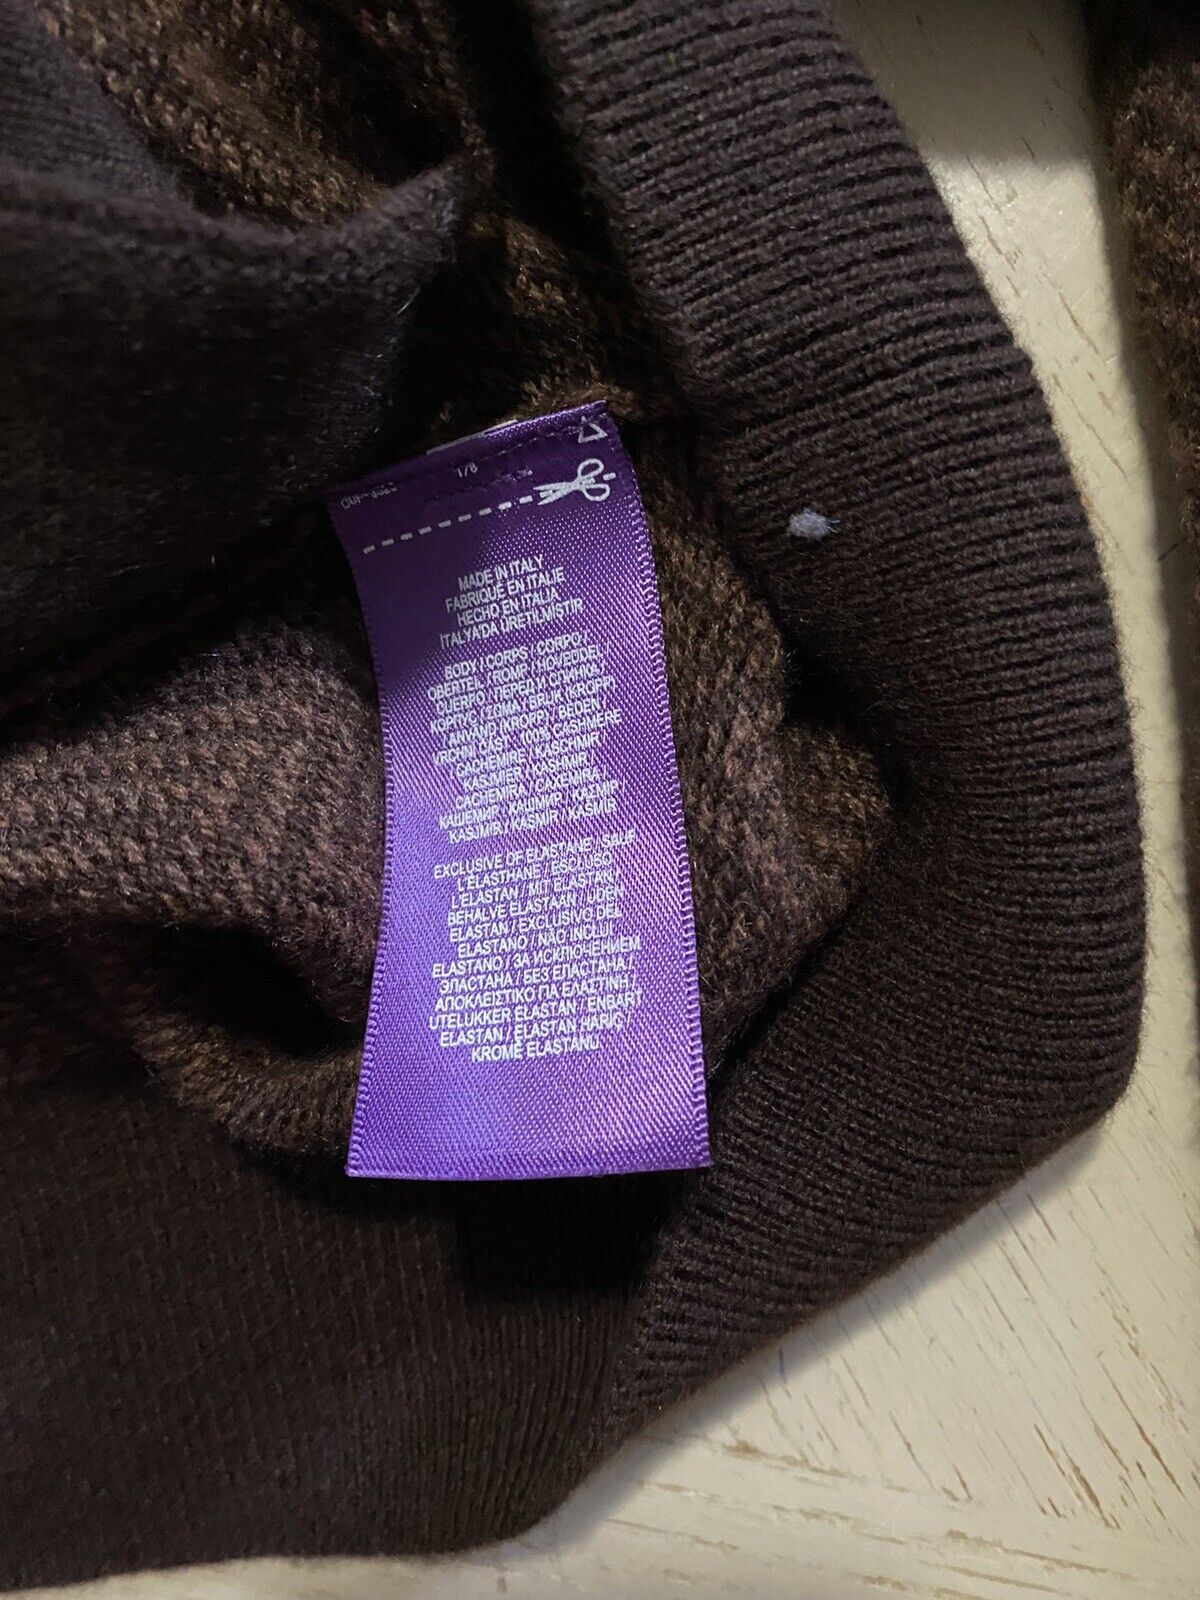 NWT $1695 Ralph Lauren Purple Label Мужской кардиган Кашемировый свитер Коричневый L Италия